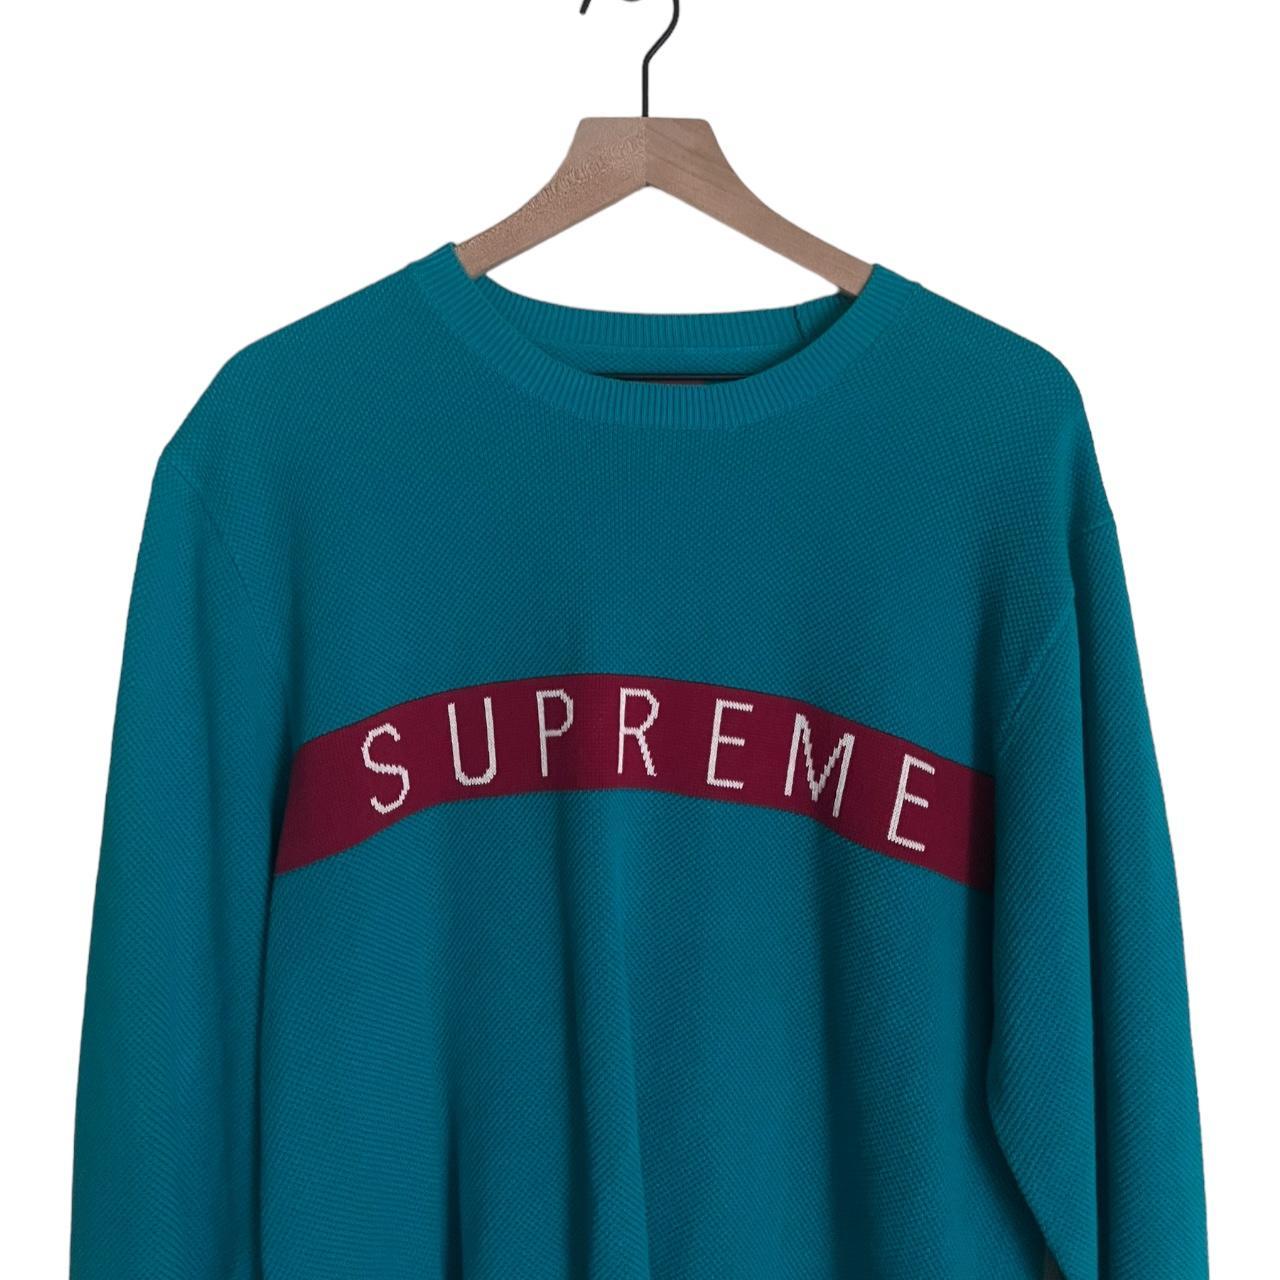 Supreme Men's Sweater